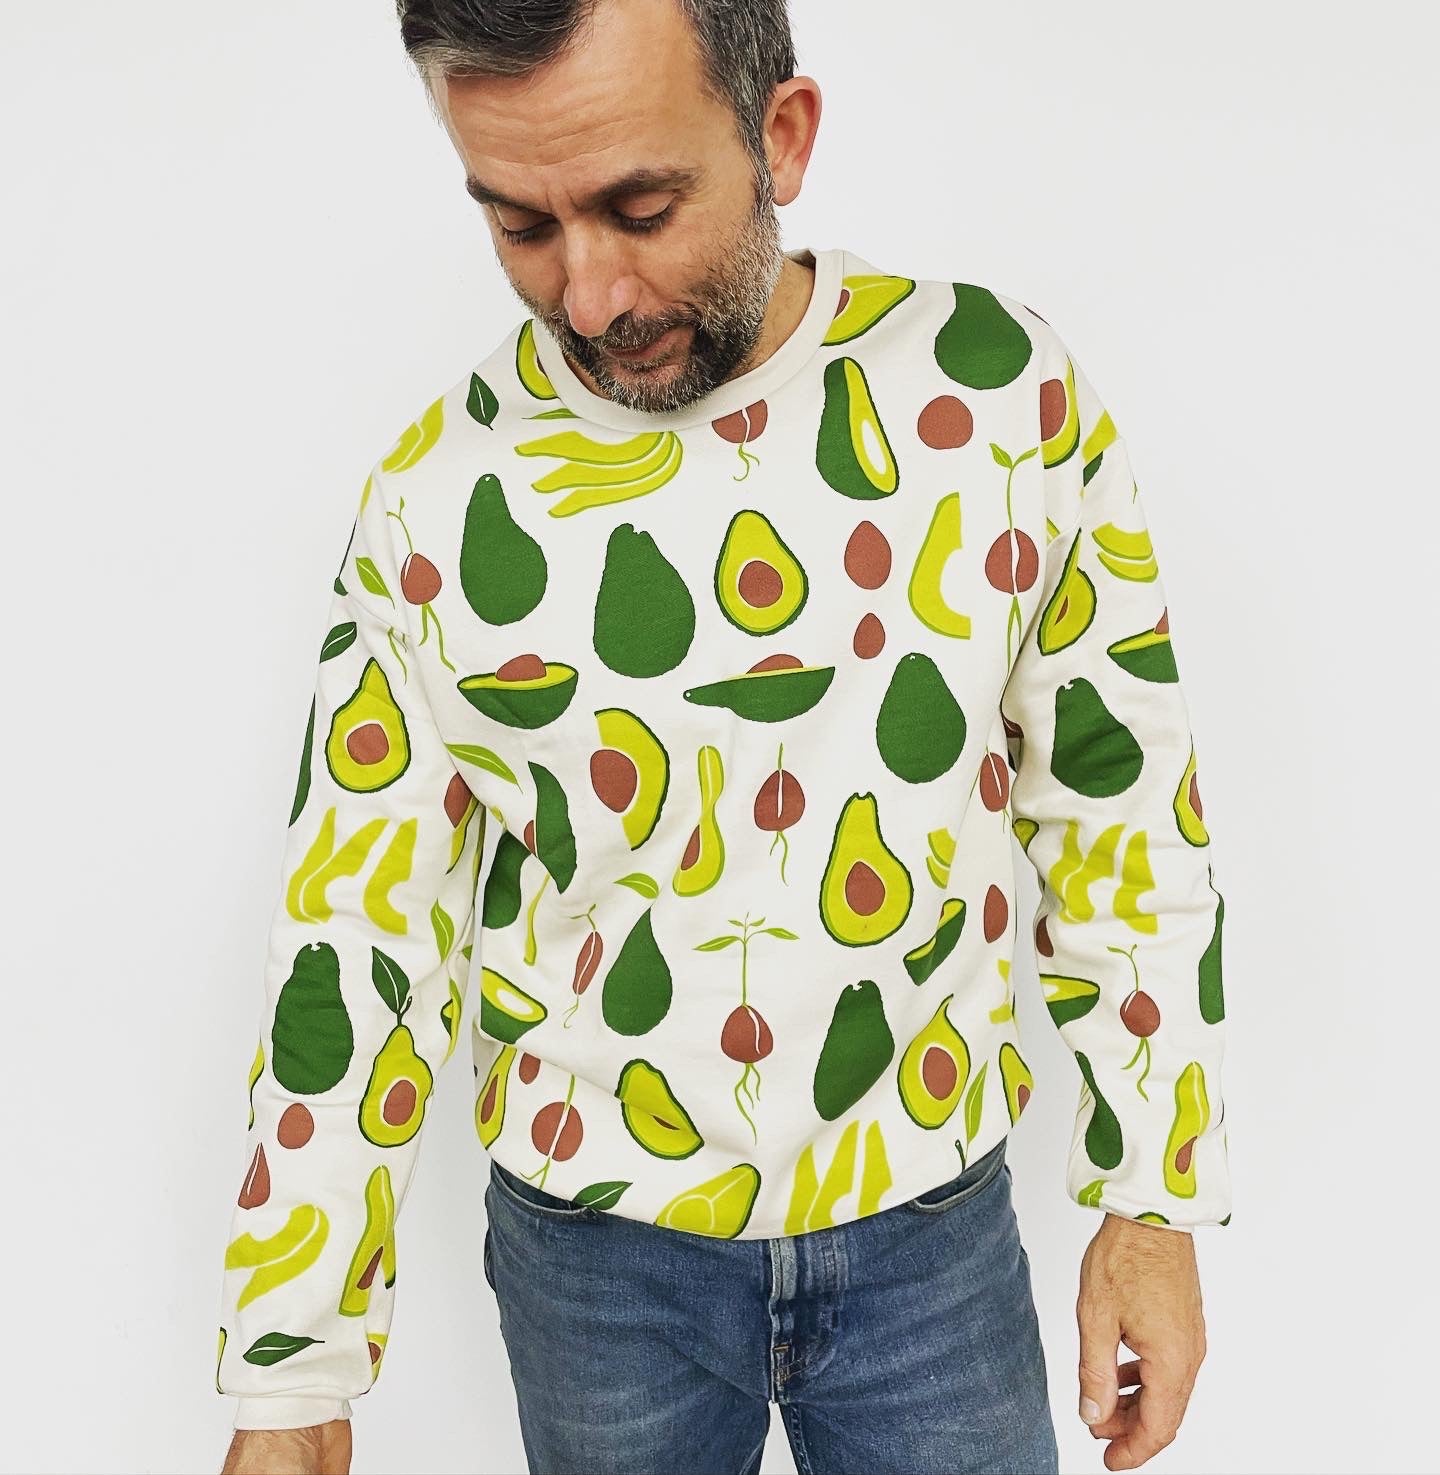 Avocado Sweatshirt adult sizes